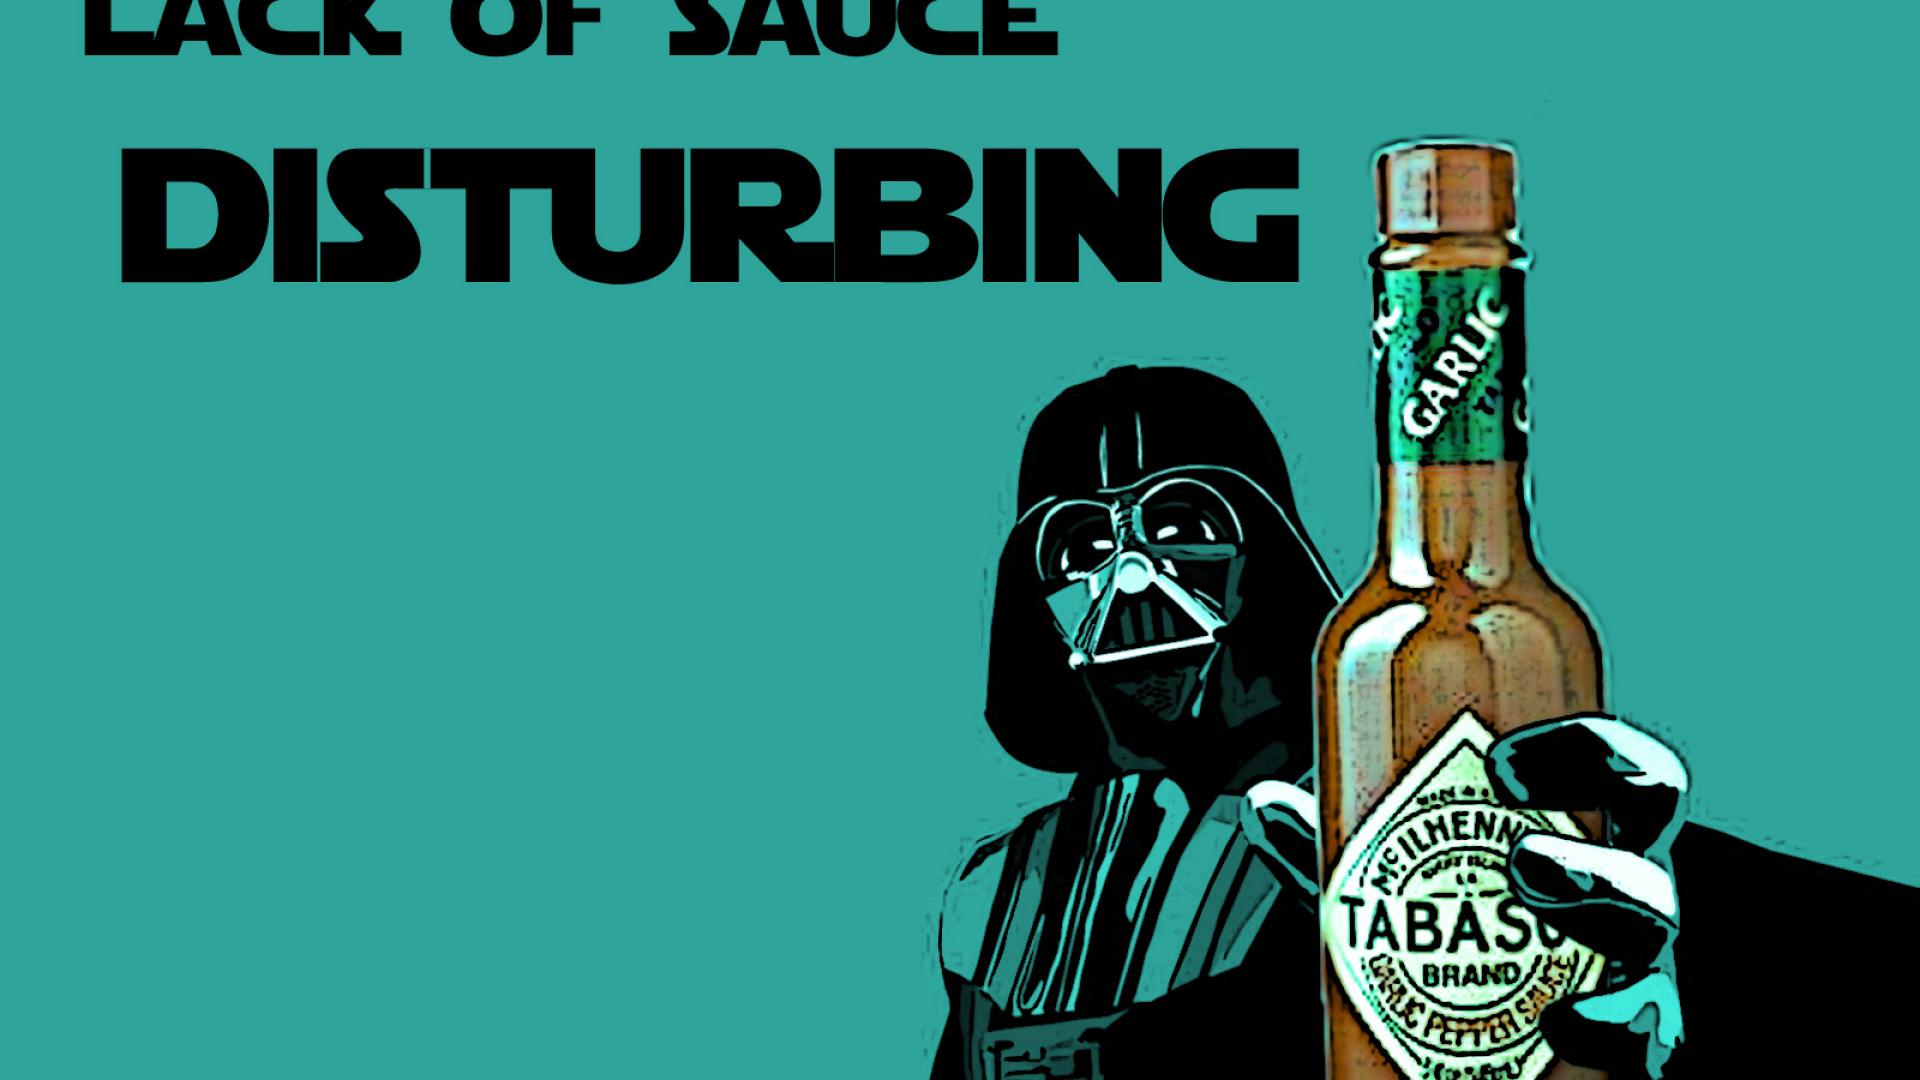 Star wars tabasco sauce blue background fan art wallpaper